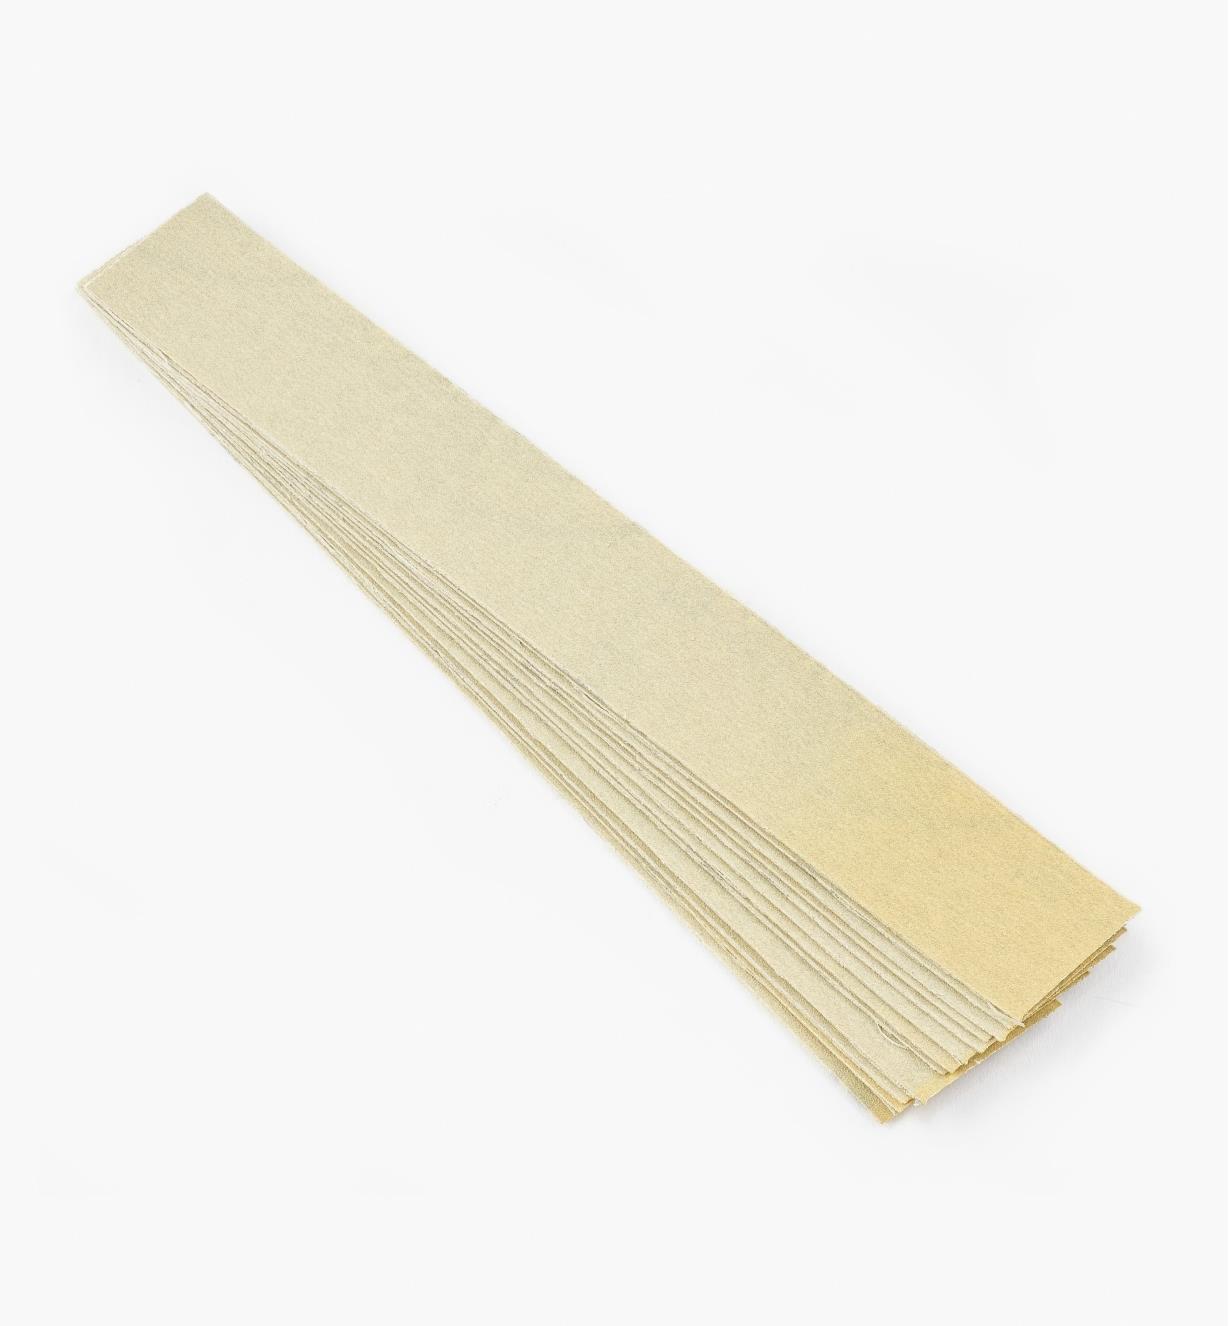 05Z1509 - Bandes de papier abrasif, grain 220, 9 po, le paquet de 12